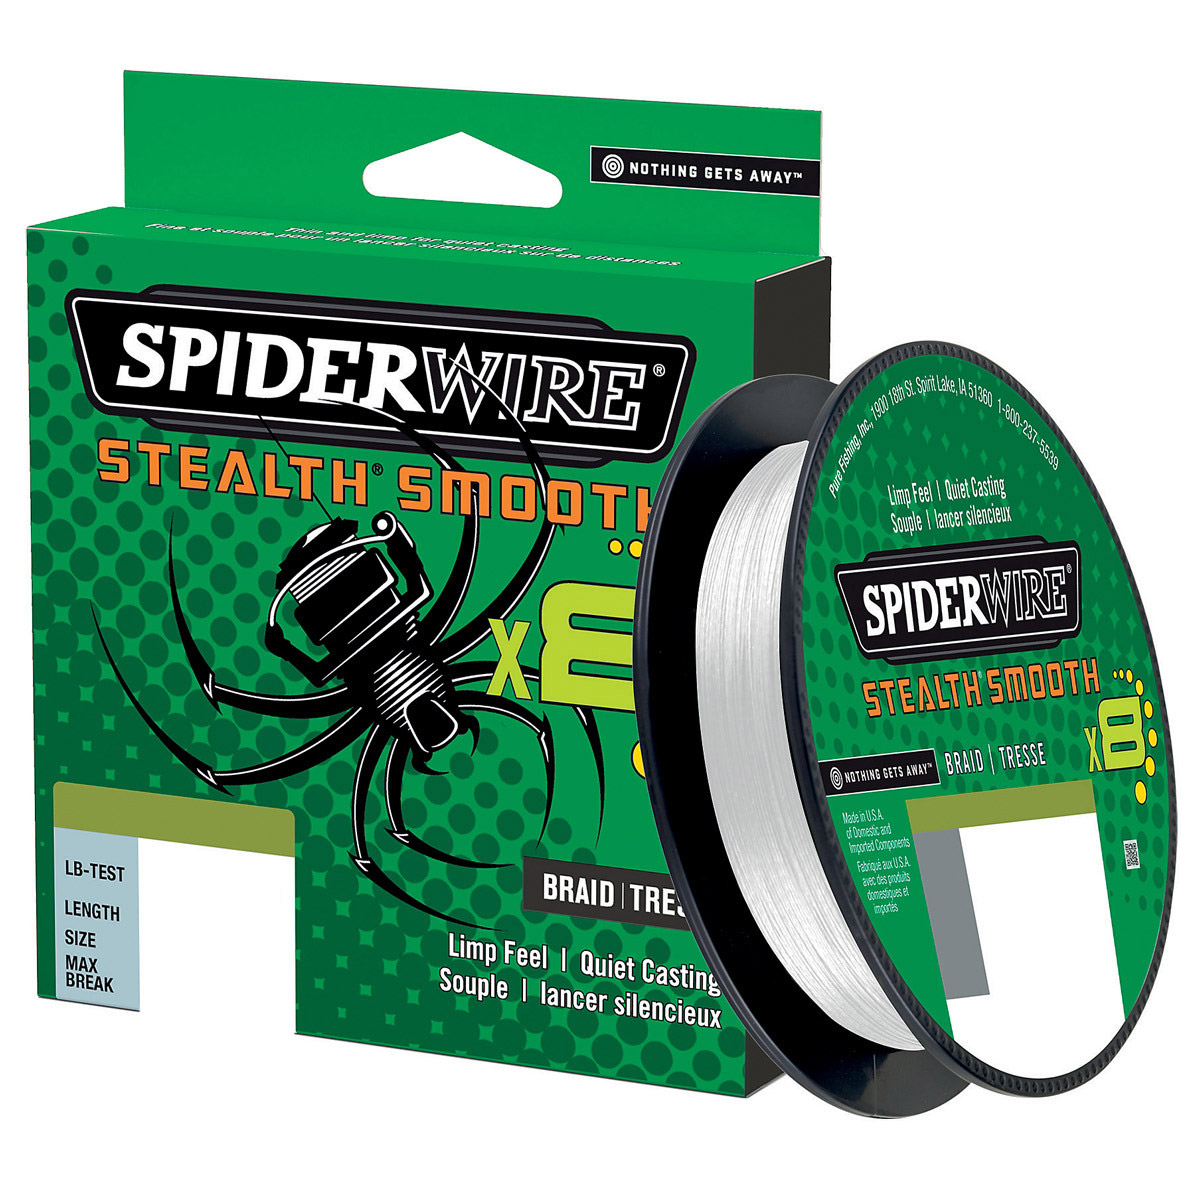 Spiderwire Stealth Smooth 8 Translucent 150 M